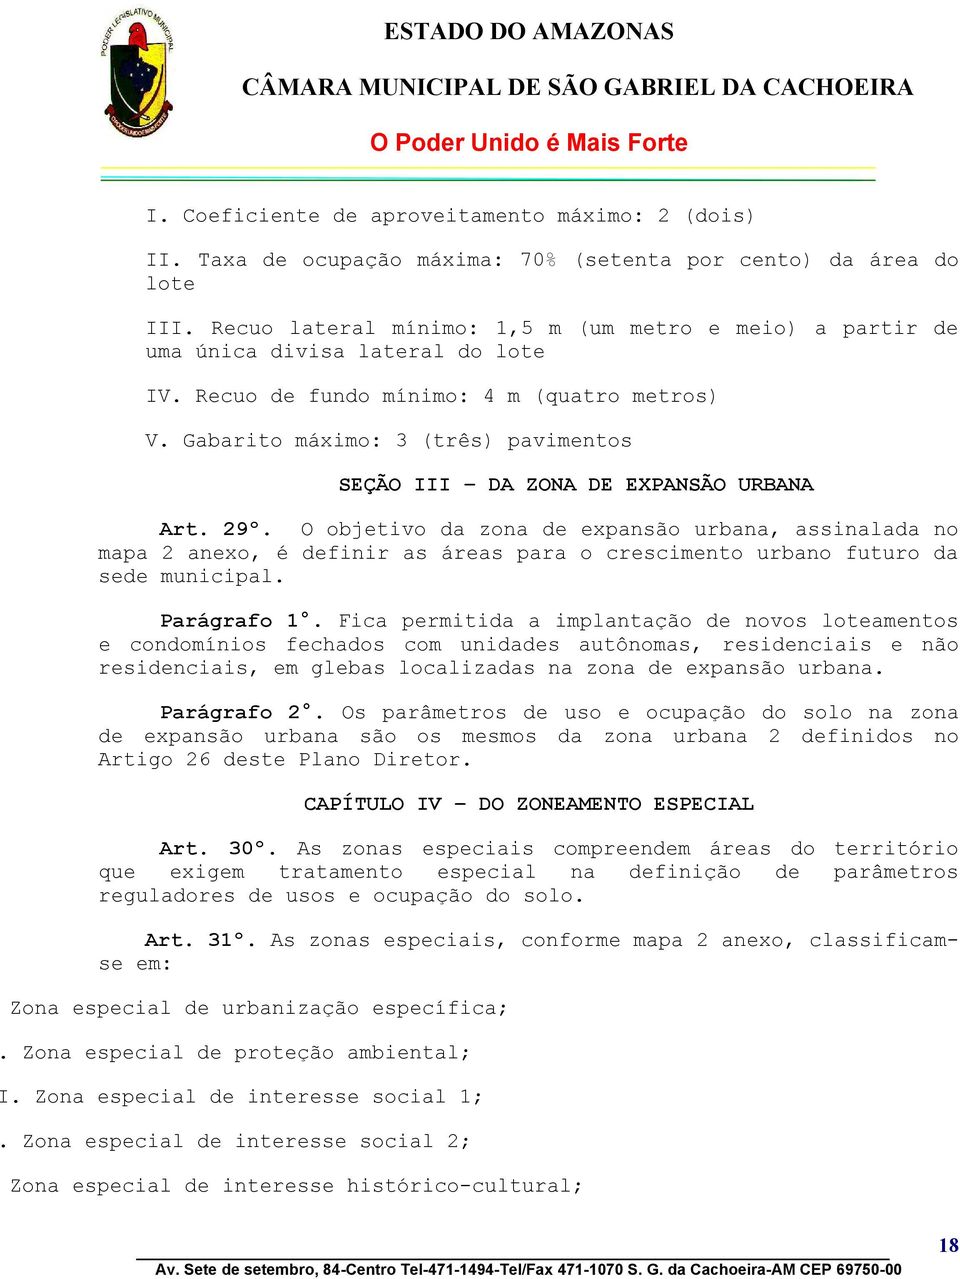 Gabarito máximo: 3 (três) pavimentos SEÇÃO III DA ZONA DE EXPANSÃO URBANA Art. 29º.